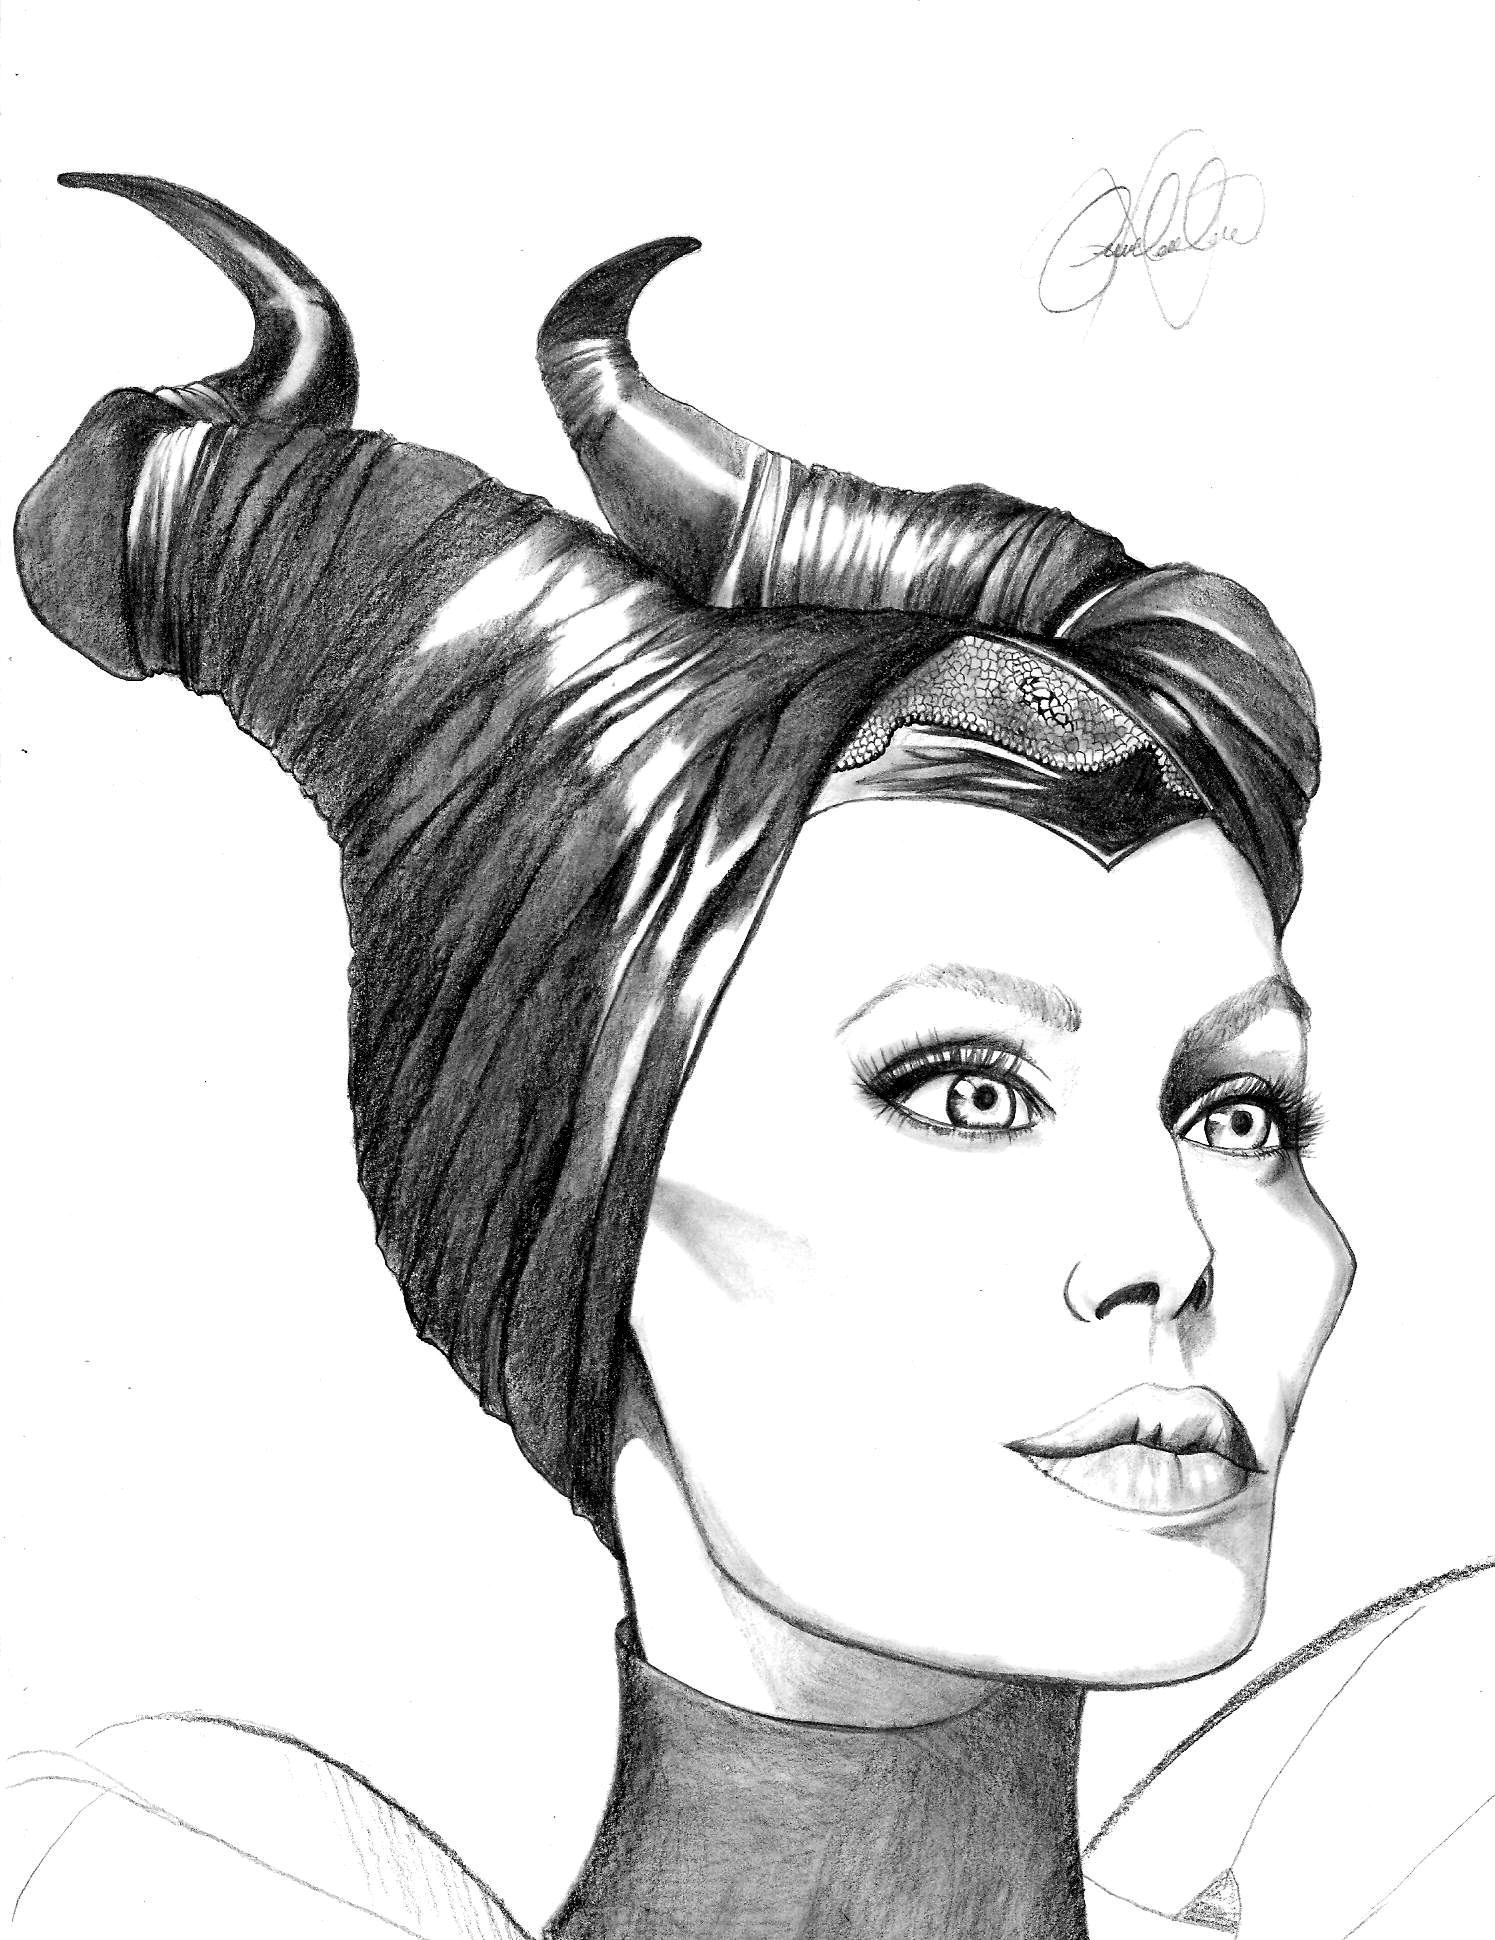 Original Maleficent & Diablo Drawing by Jack Huber. - Van Eaton Galleries